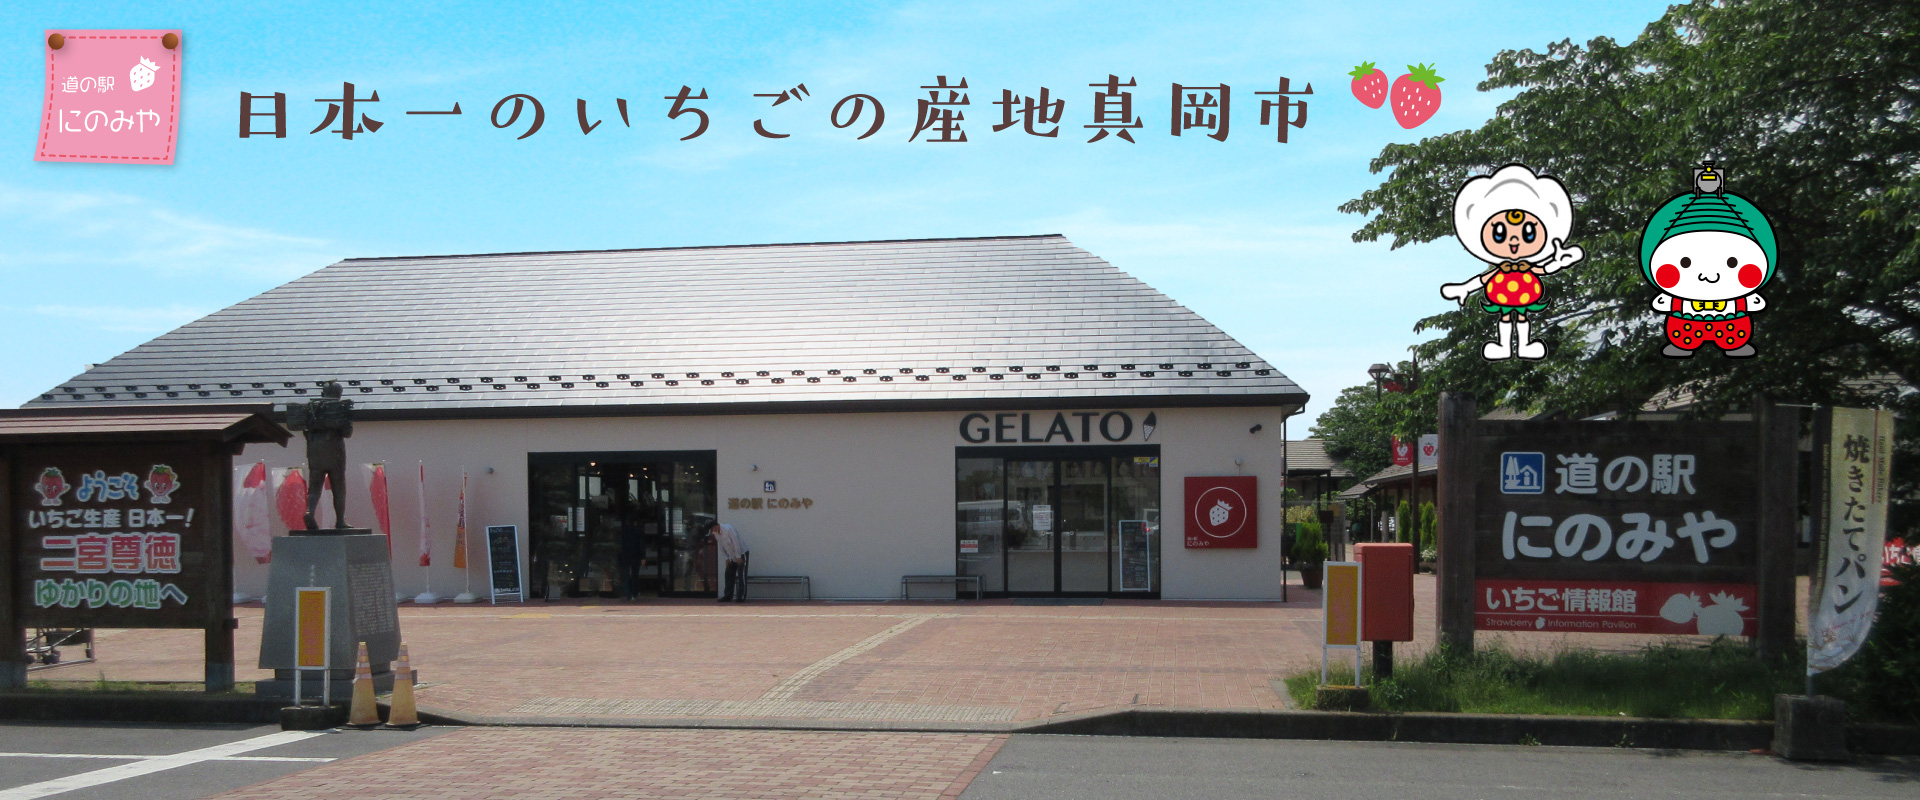 道の駅にのみや 栃木県真岡市の道の駅 栃木県真岡市にある道の駅にのみやの公式ホームページです